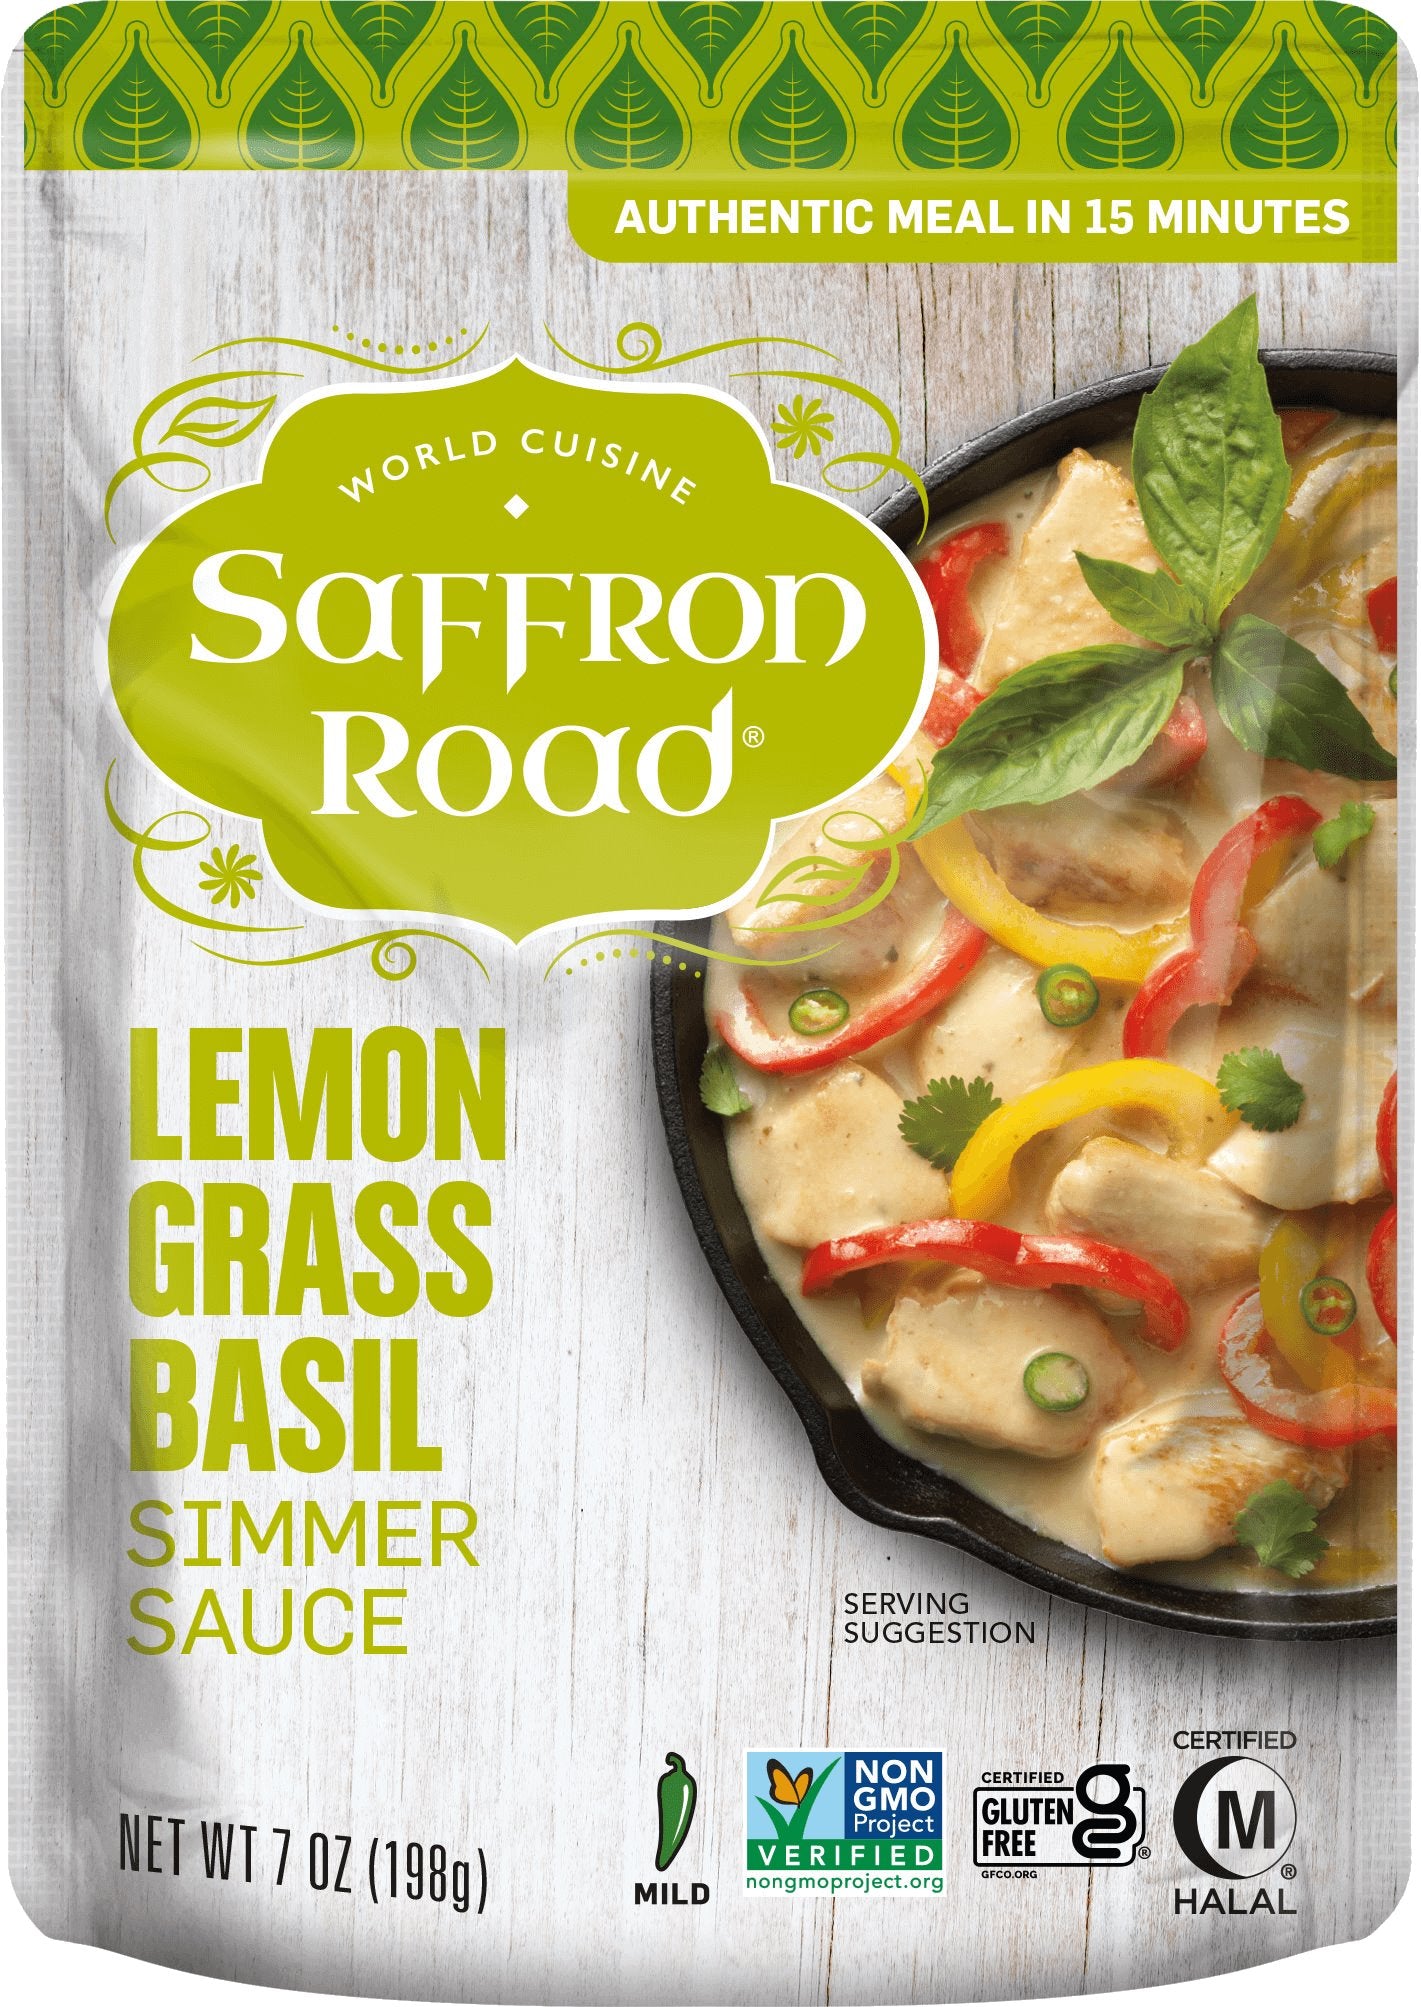 Simmer sauce lemongrass basil by saffron road